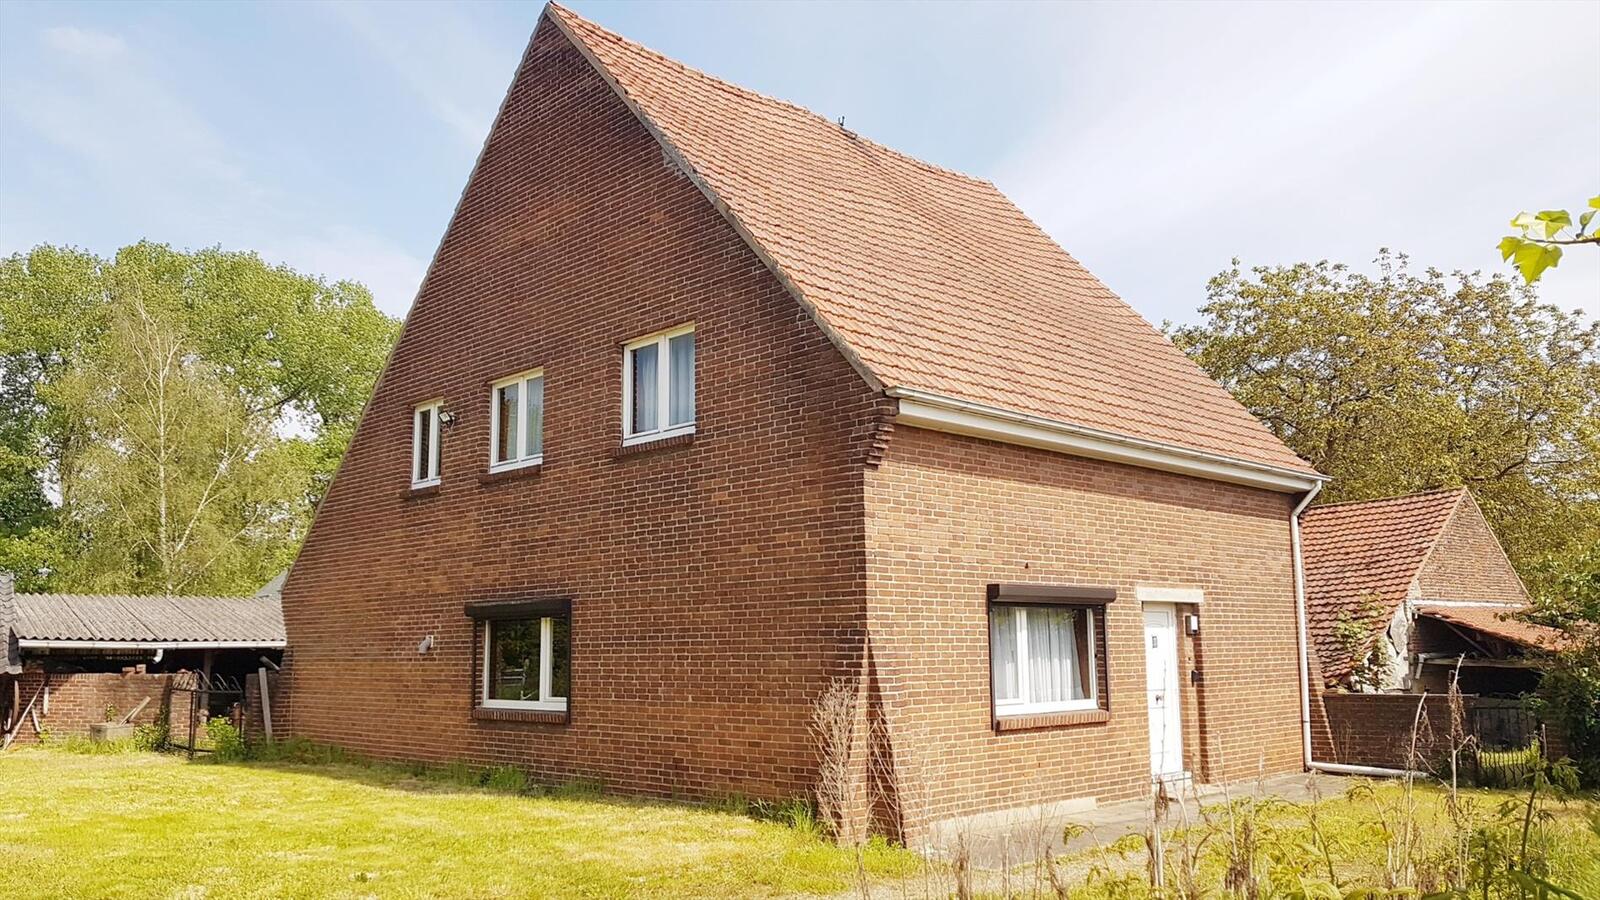 Property sold in Neeroeteren